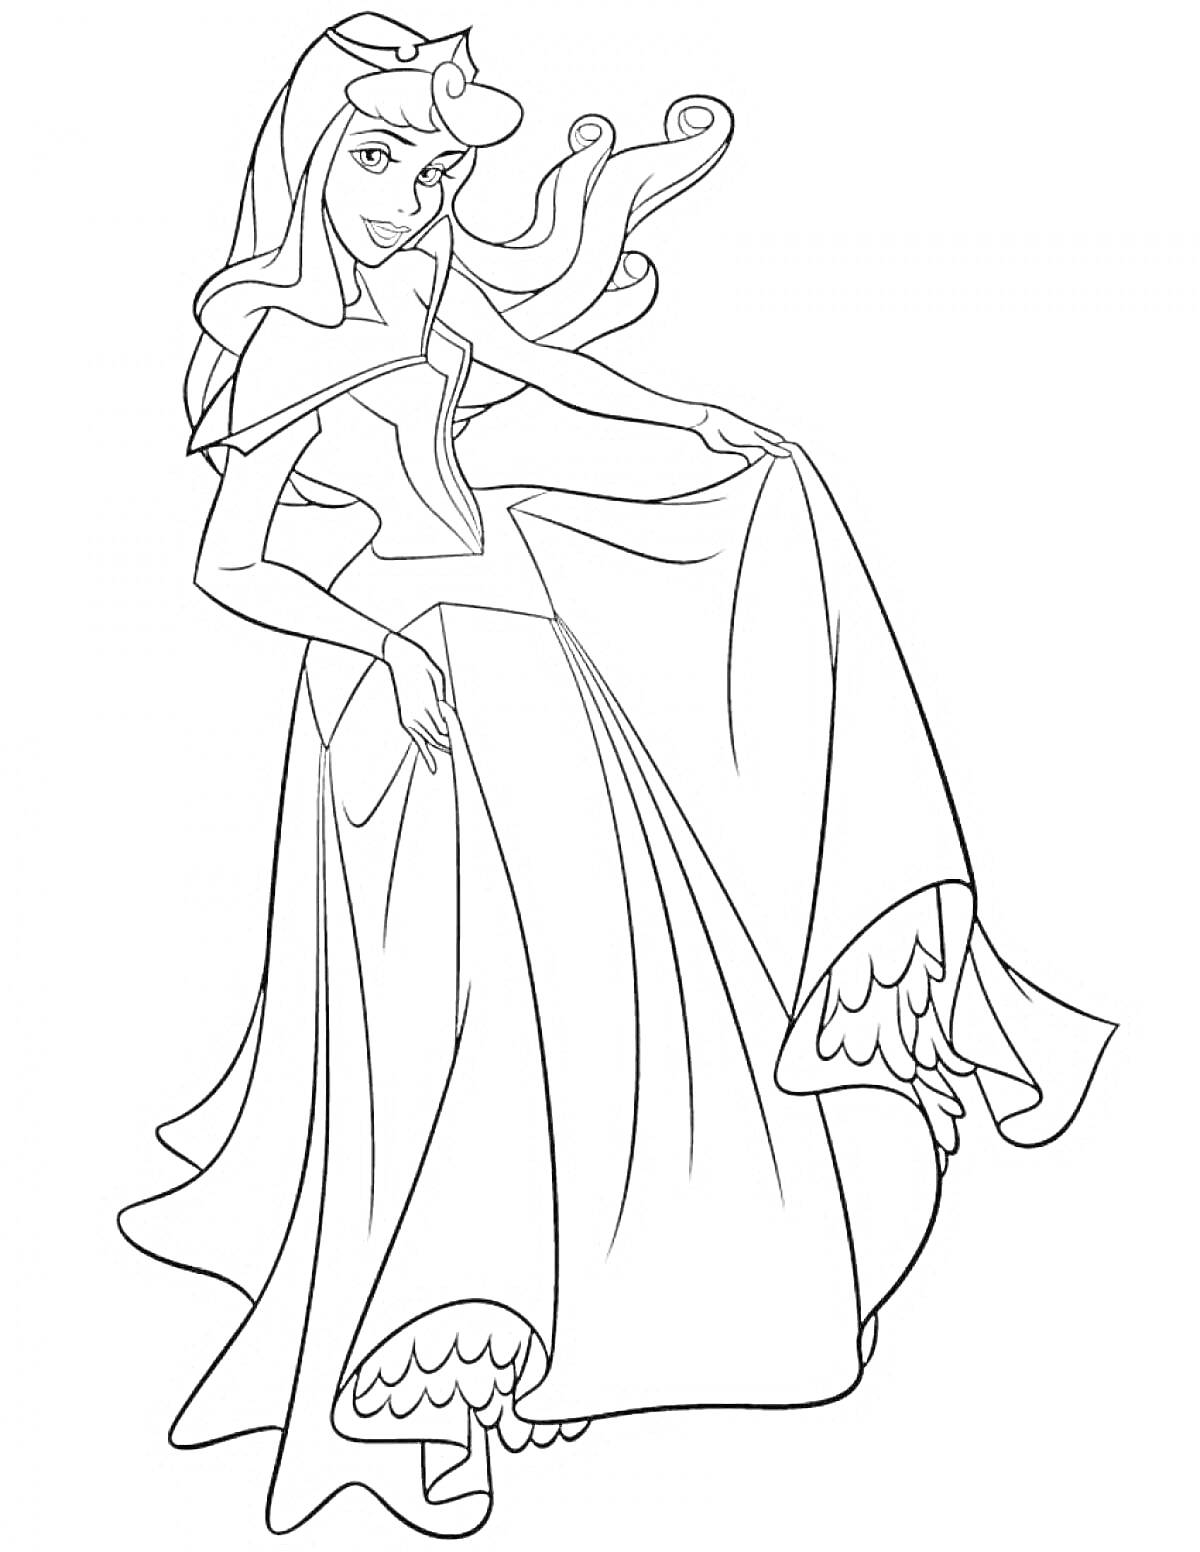 Раскраска Принцесса в длинном платье с короной и развевающимися волосами